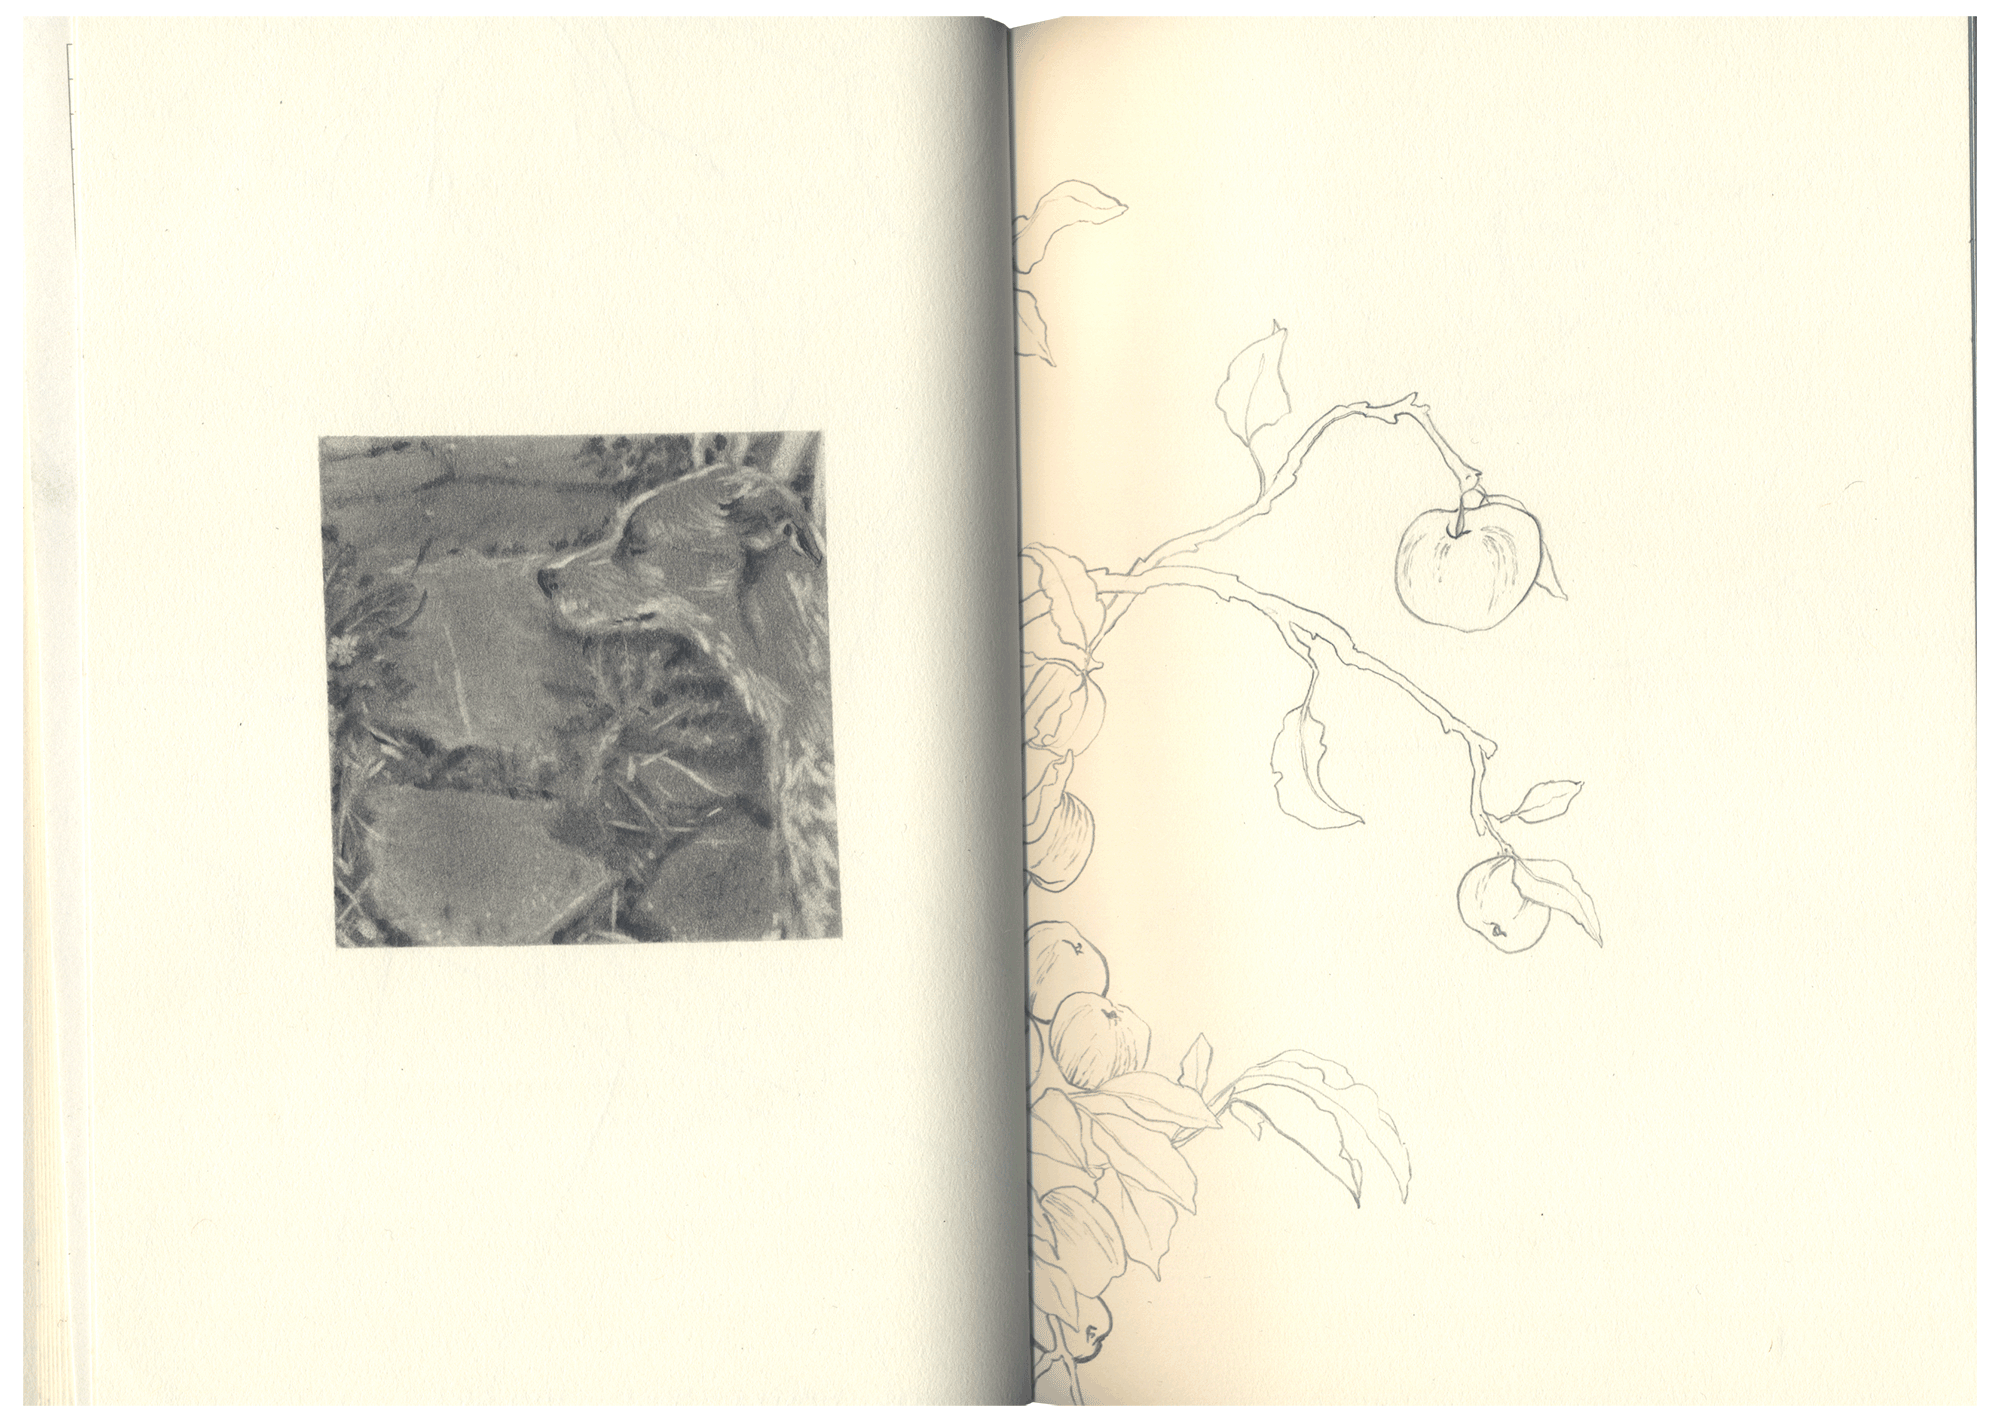 nicomi-nix-turner-sketchbook-7.png